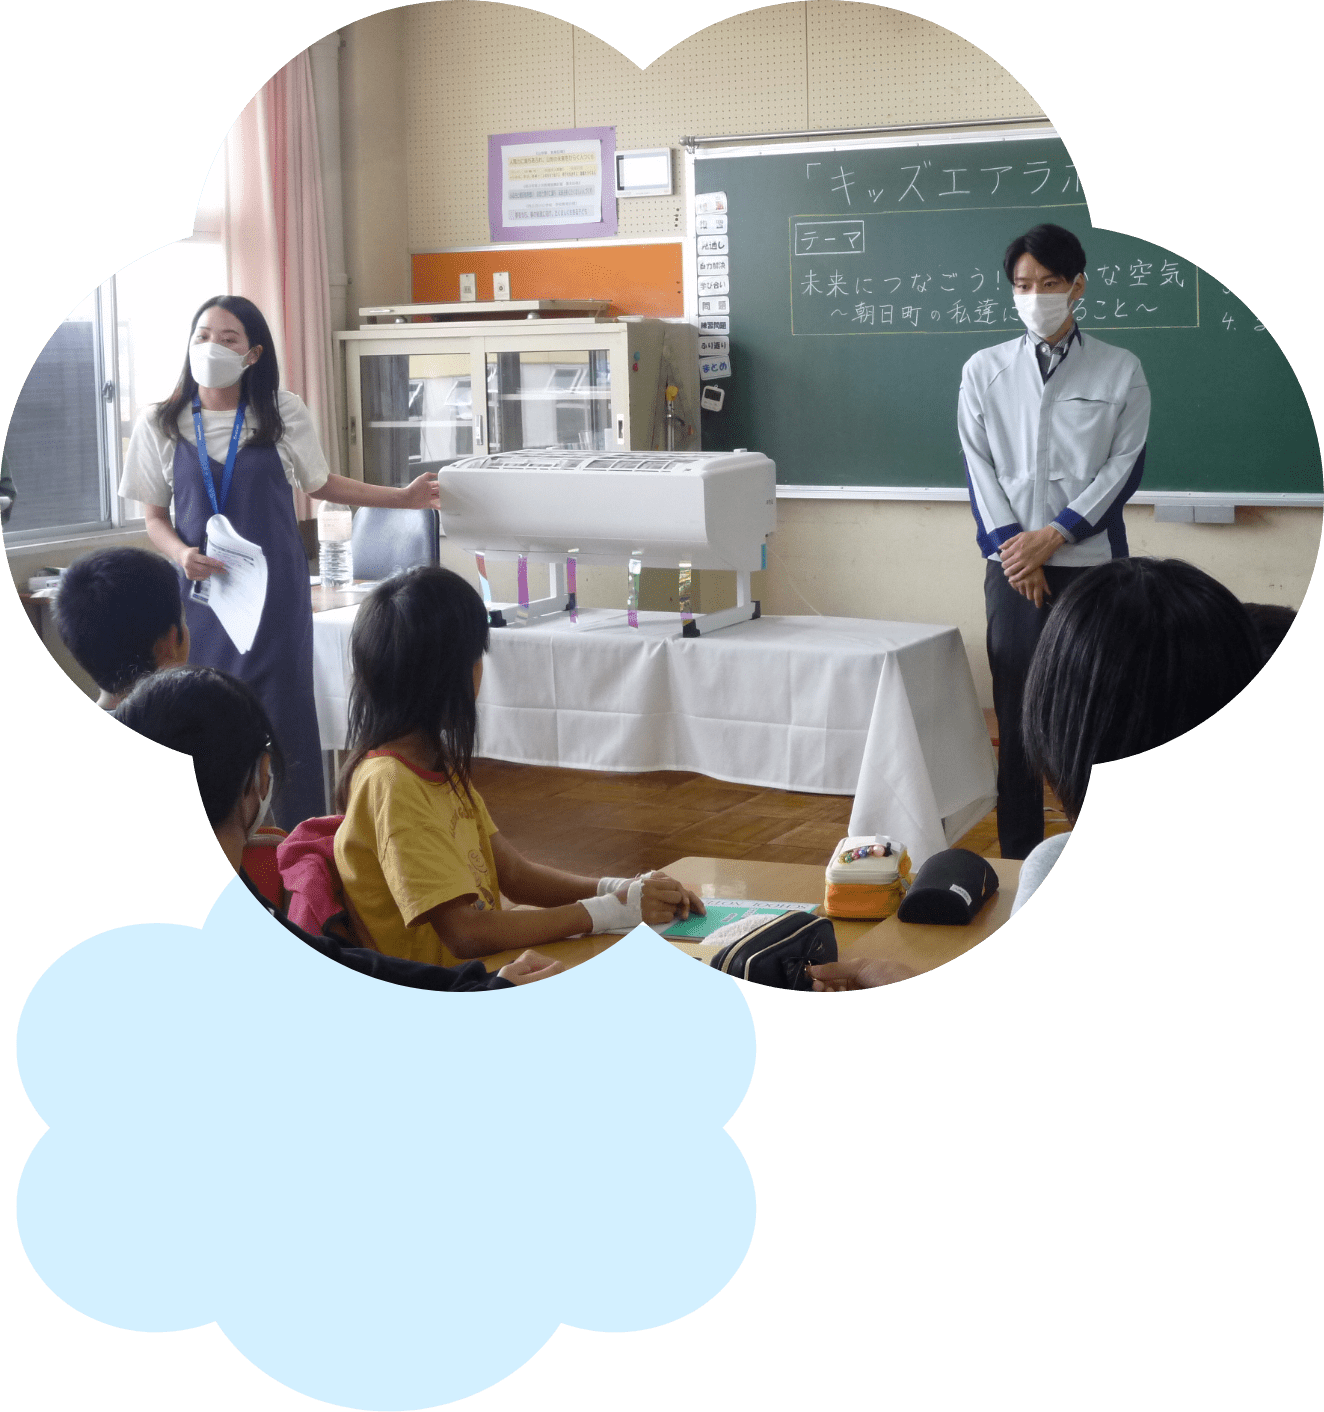 教室で空気について学ぶ子供たちと先生の画像